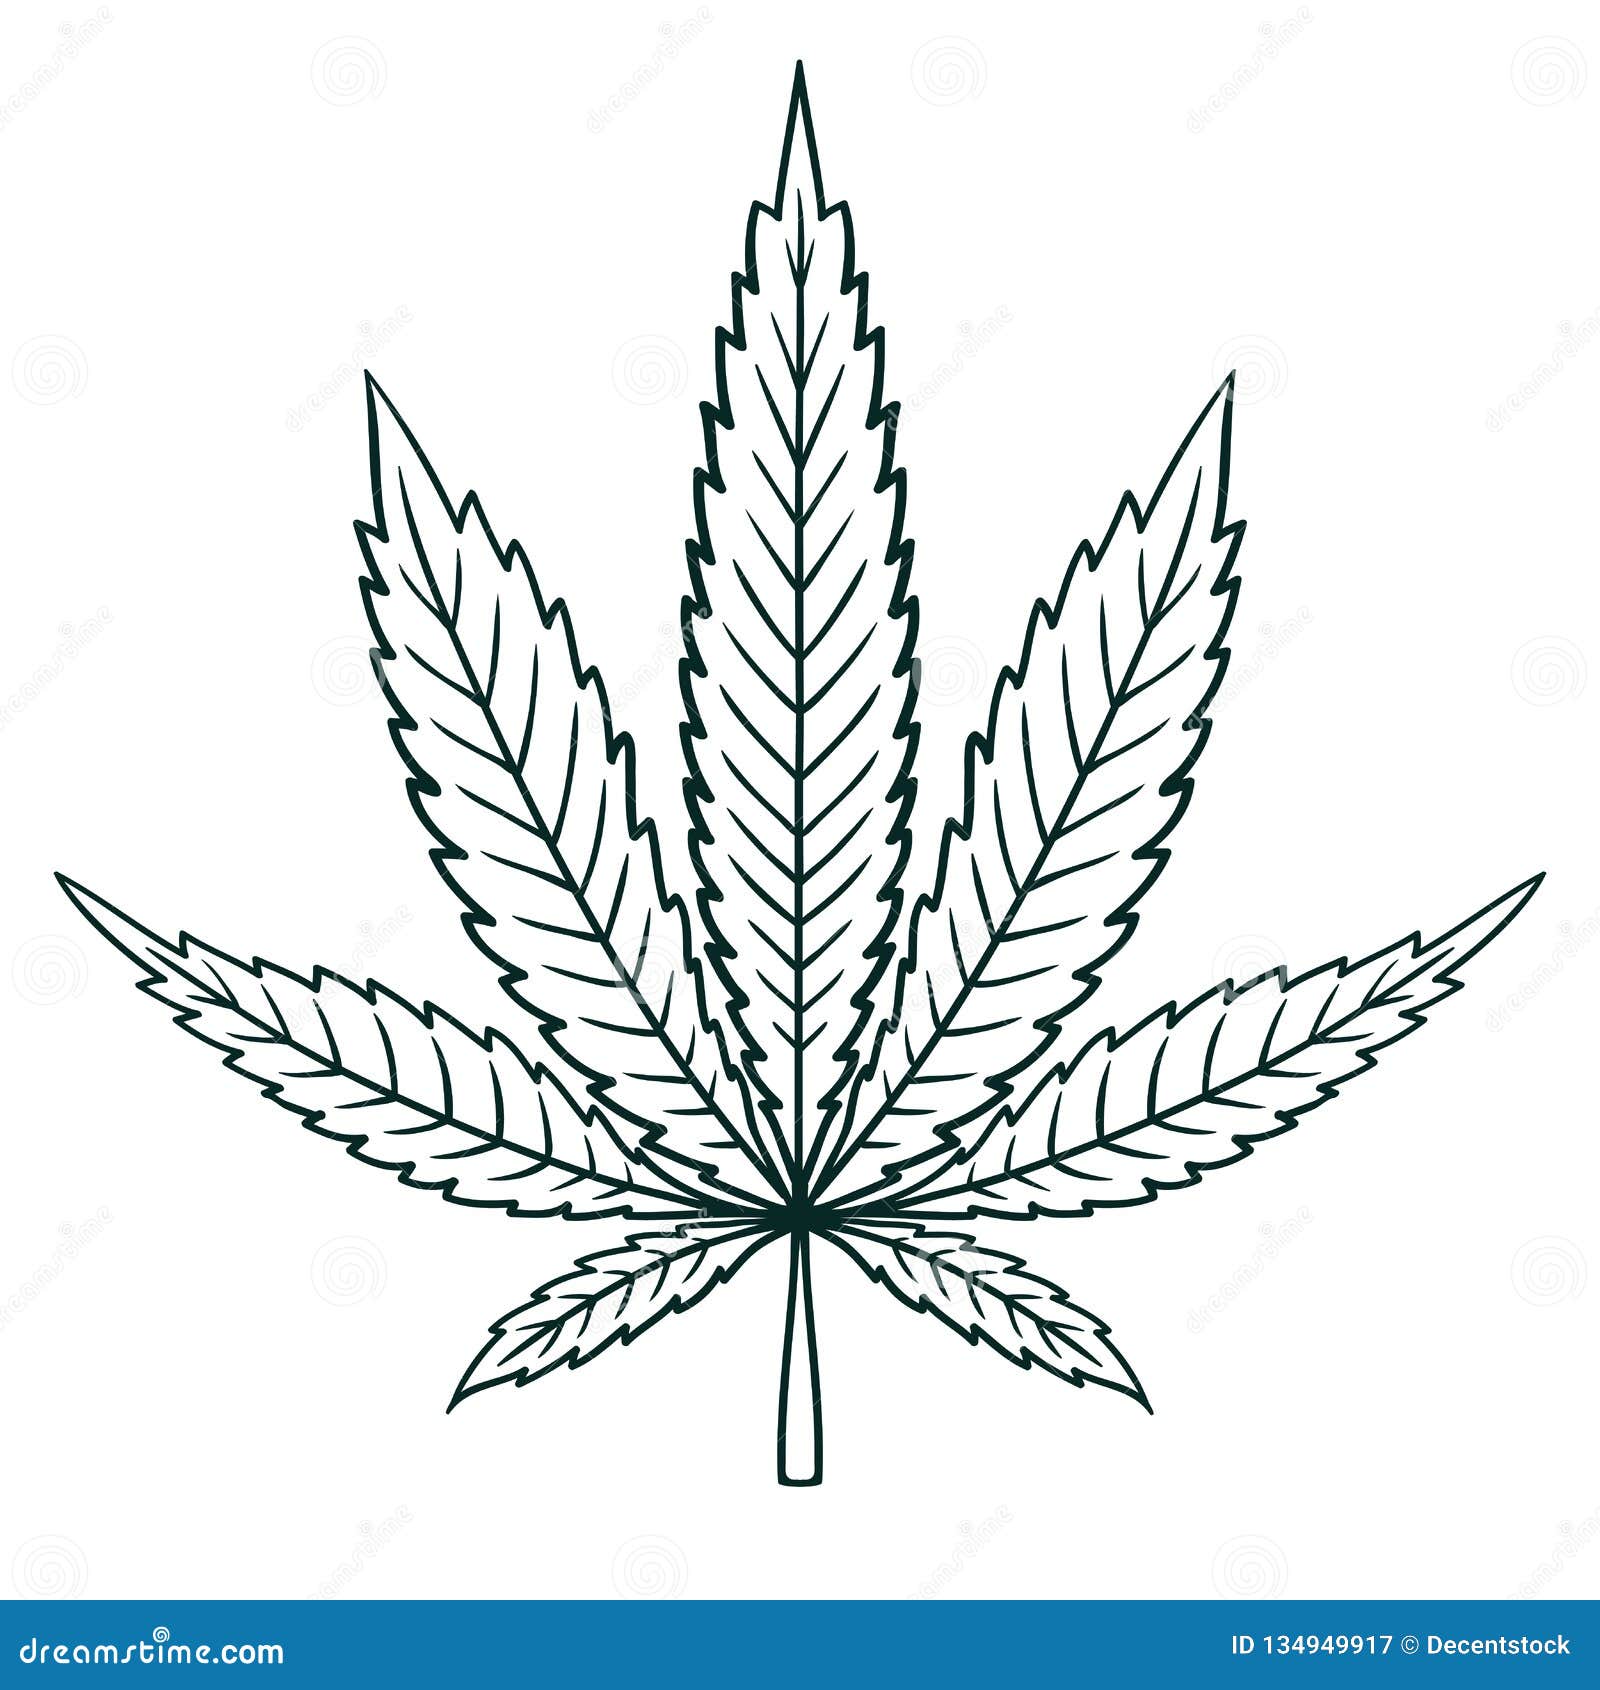 картинки с листом марихуаны